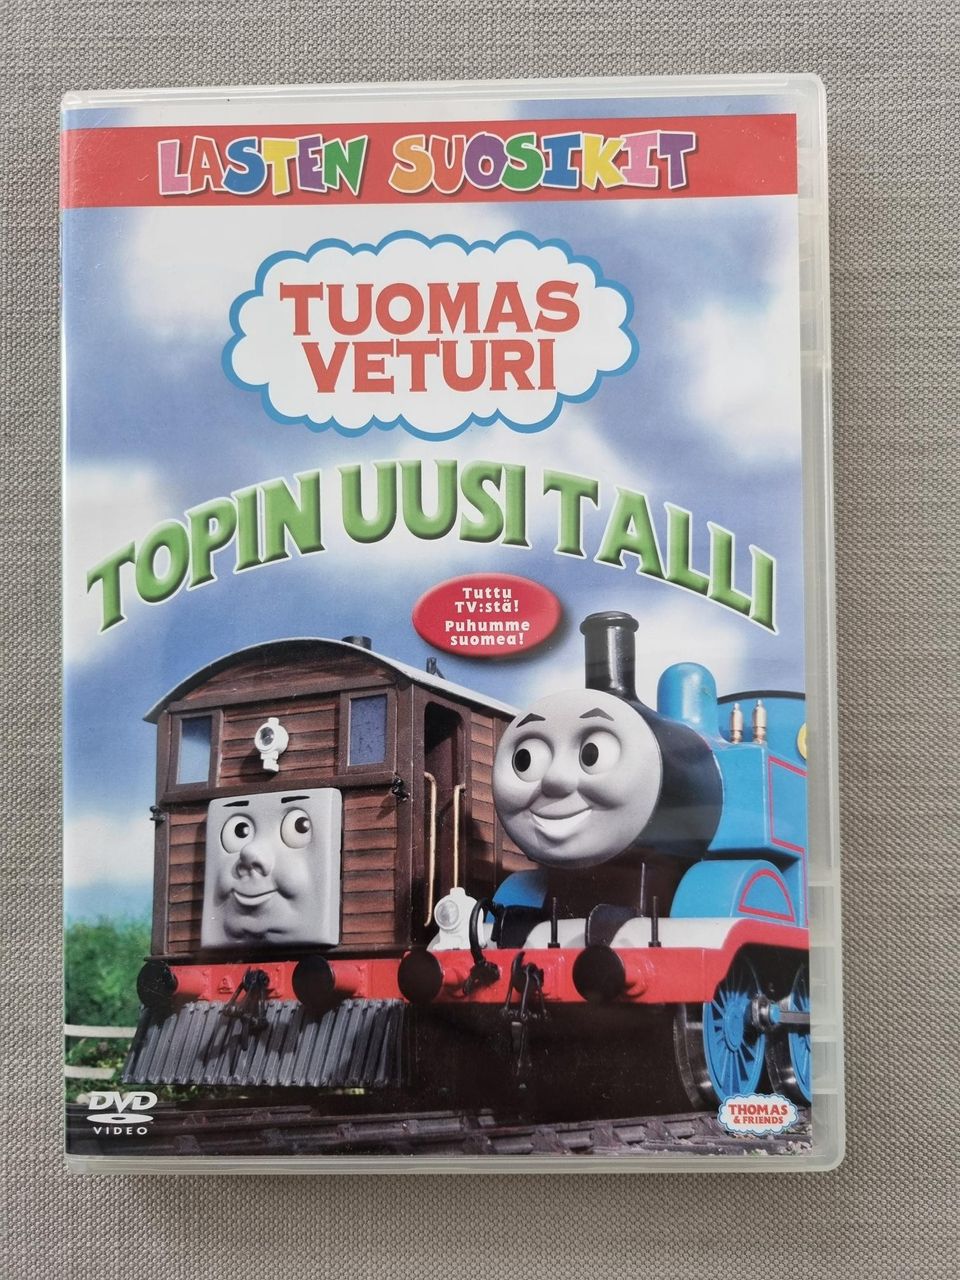 DVD Tuomas veturi - Topin uusi talli